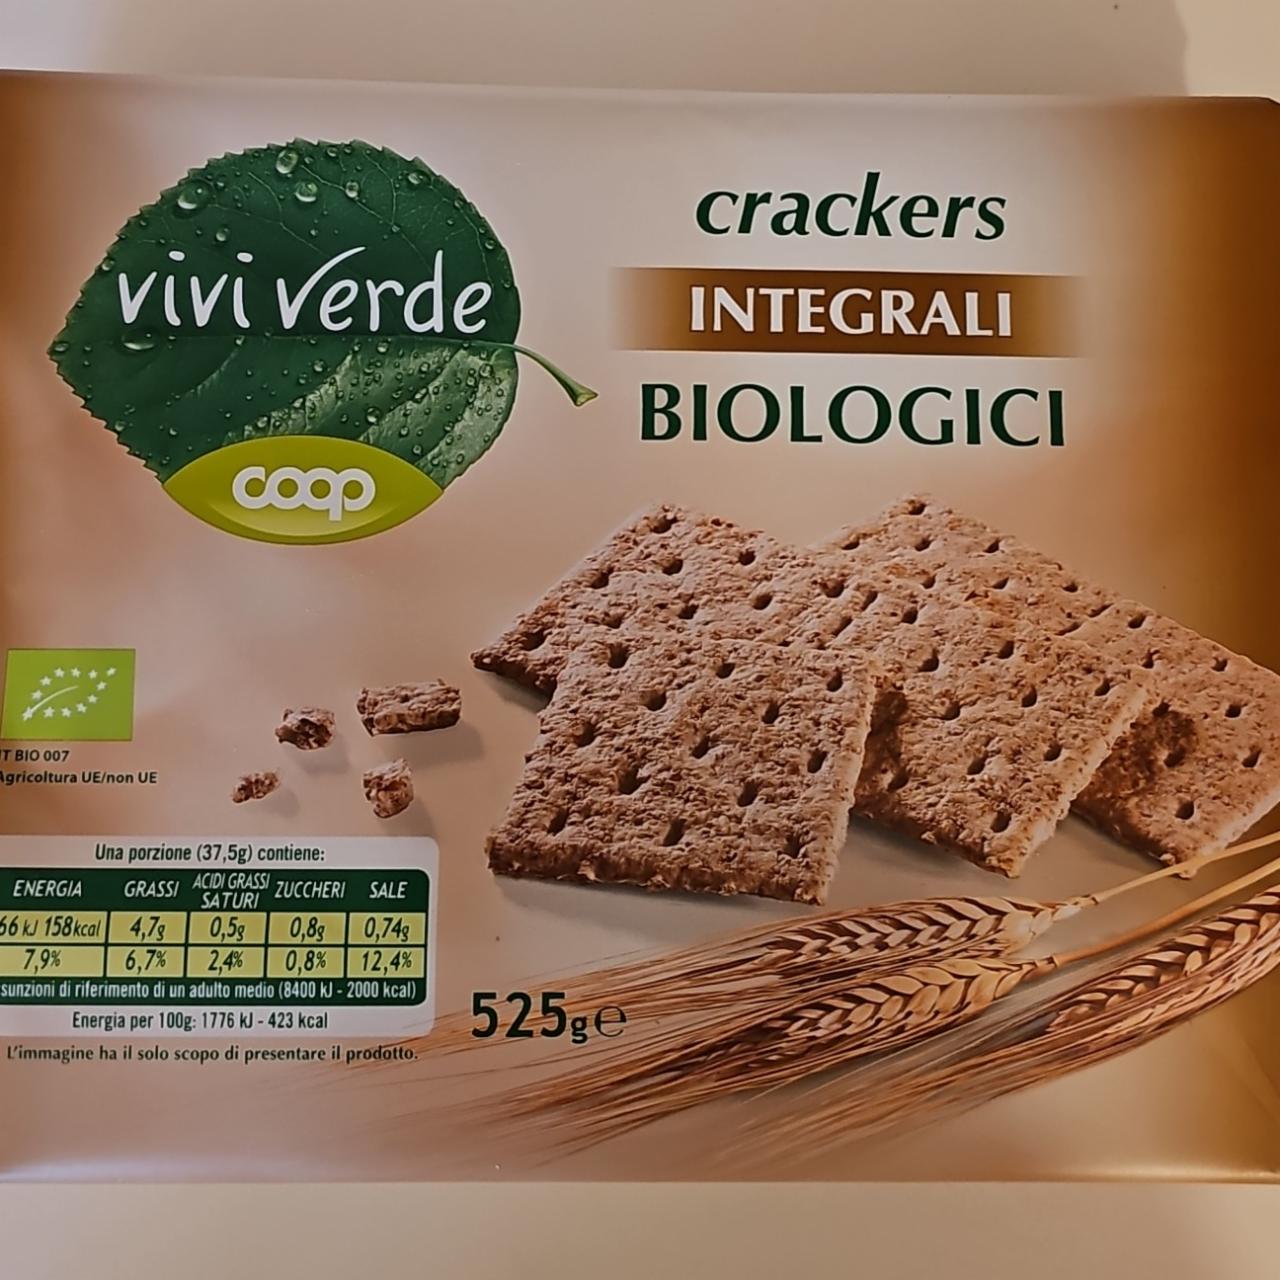 Fotografie - Crackers Integrali Biologici Vivi Verde Coop